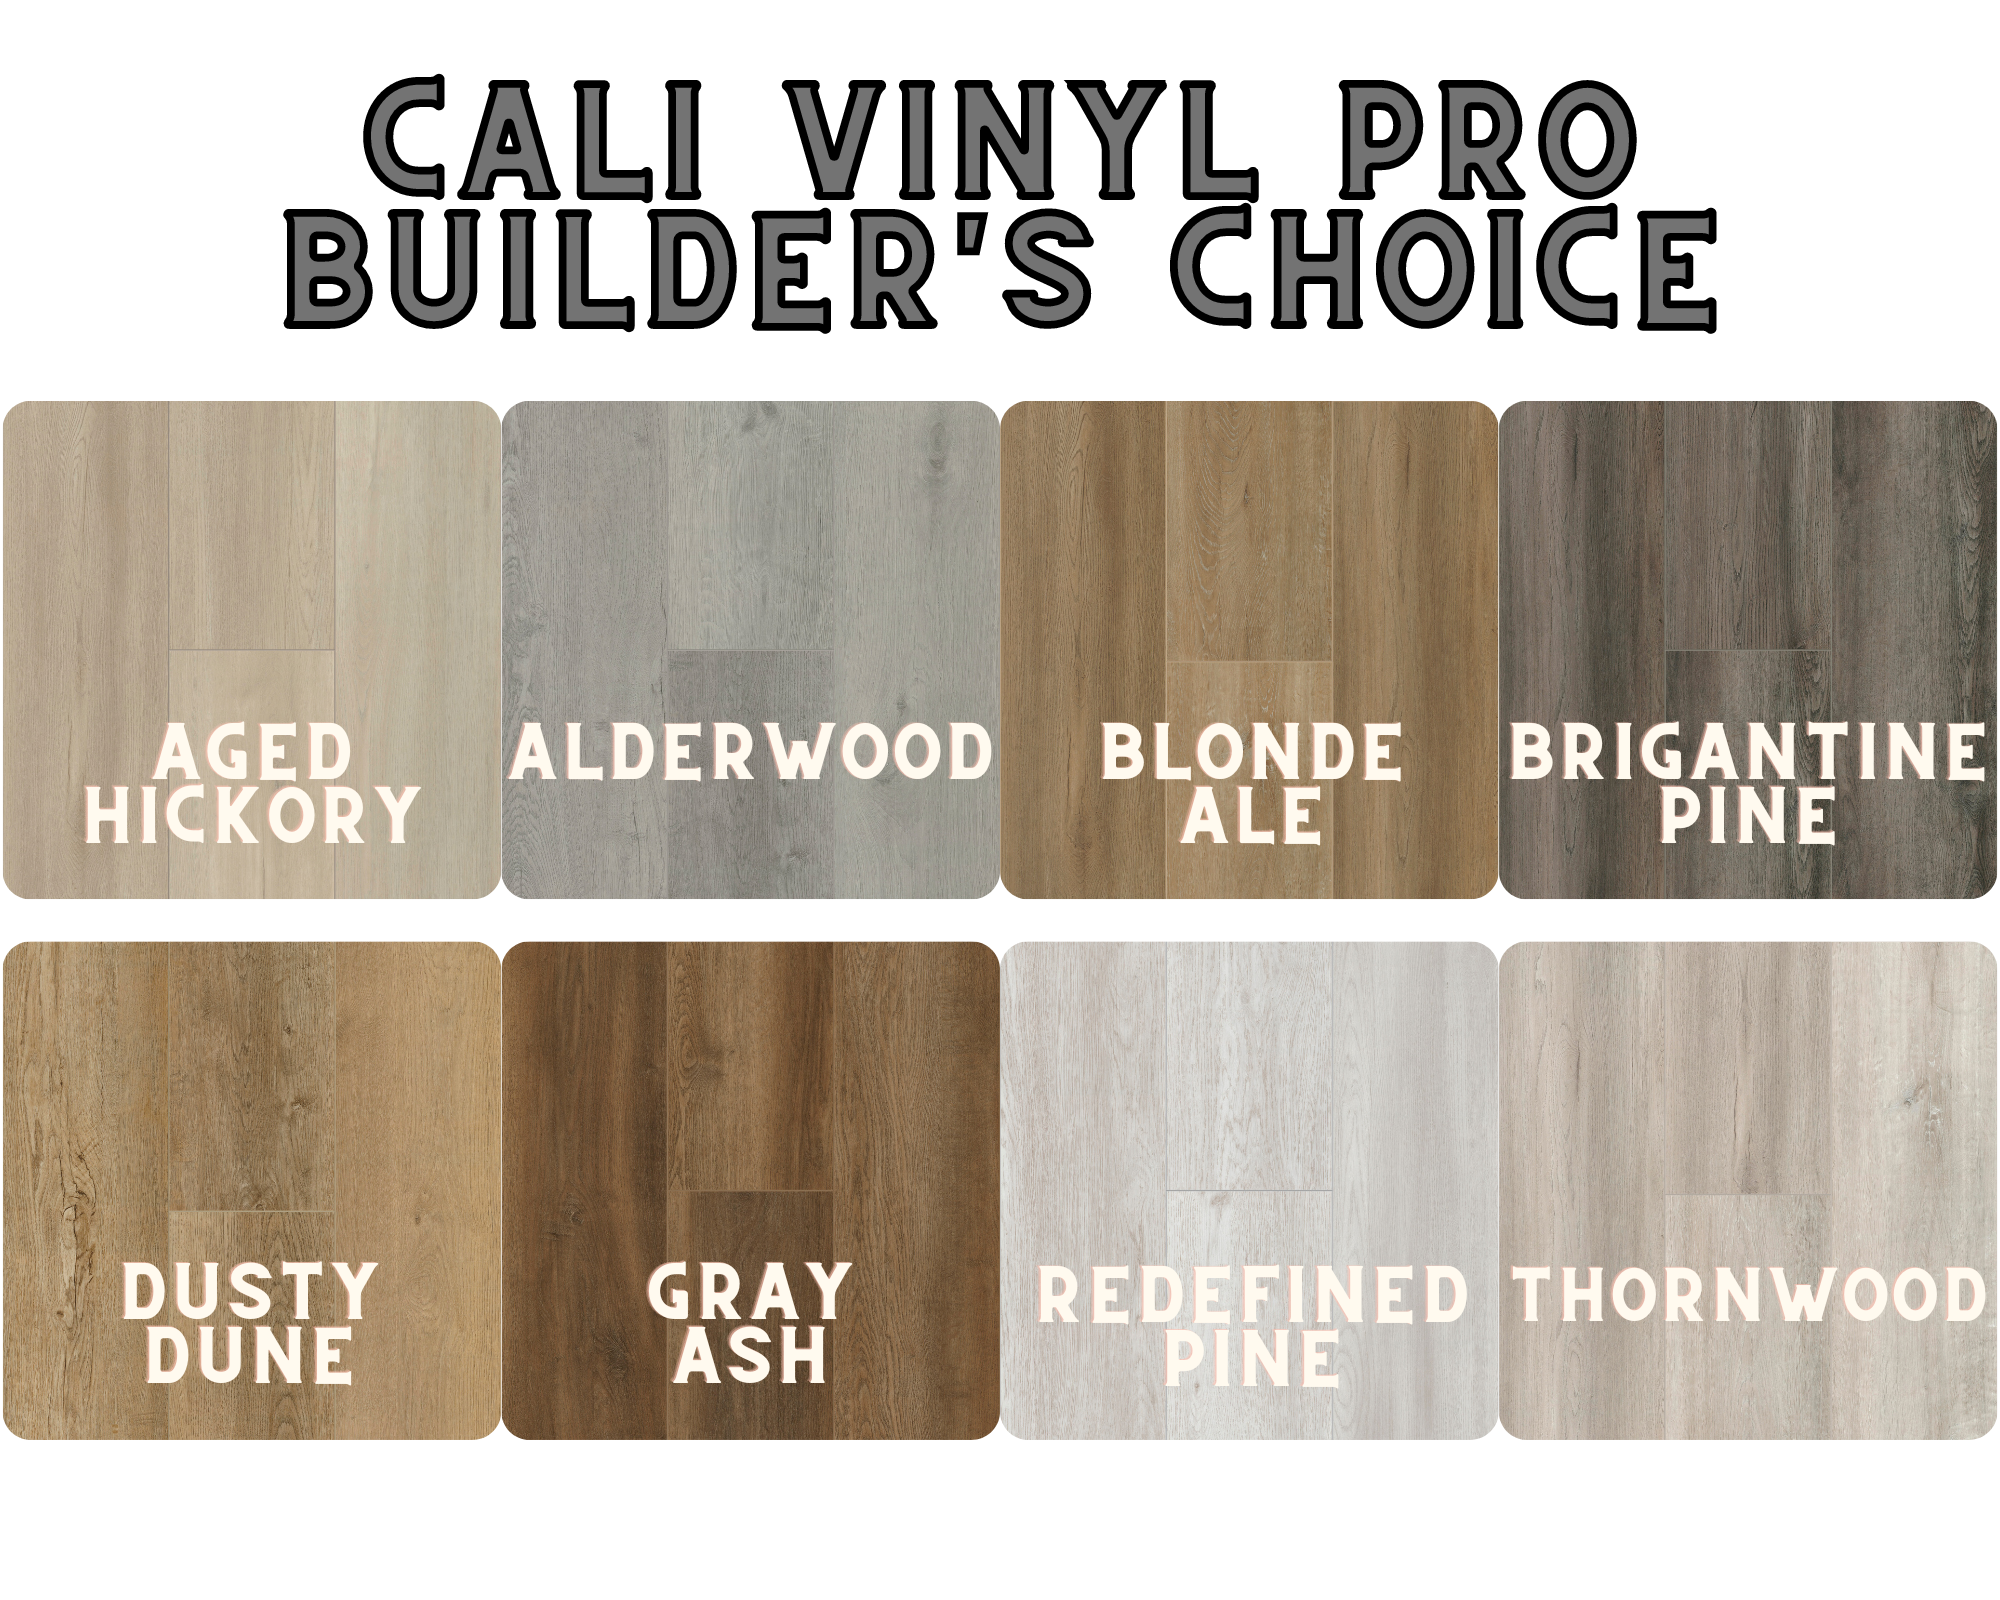 Cali Vinyl Pro Builders Choice colors